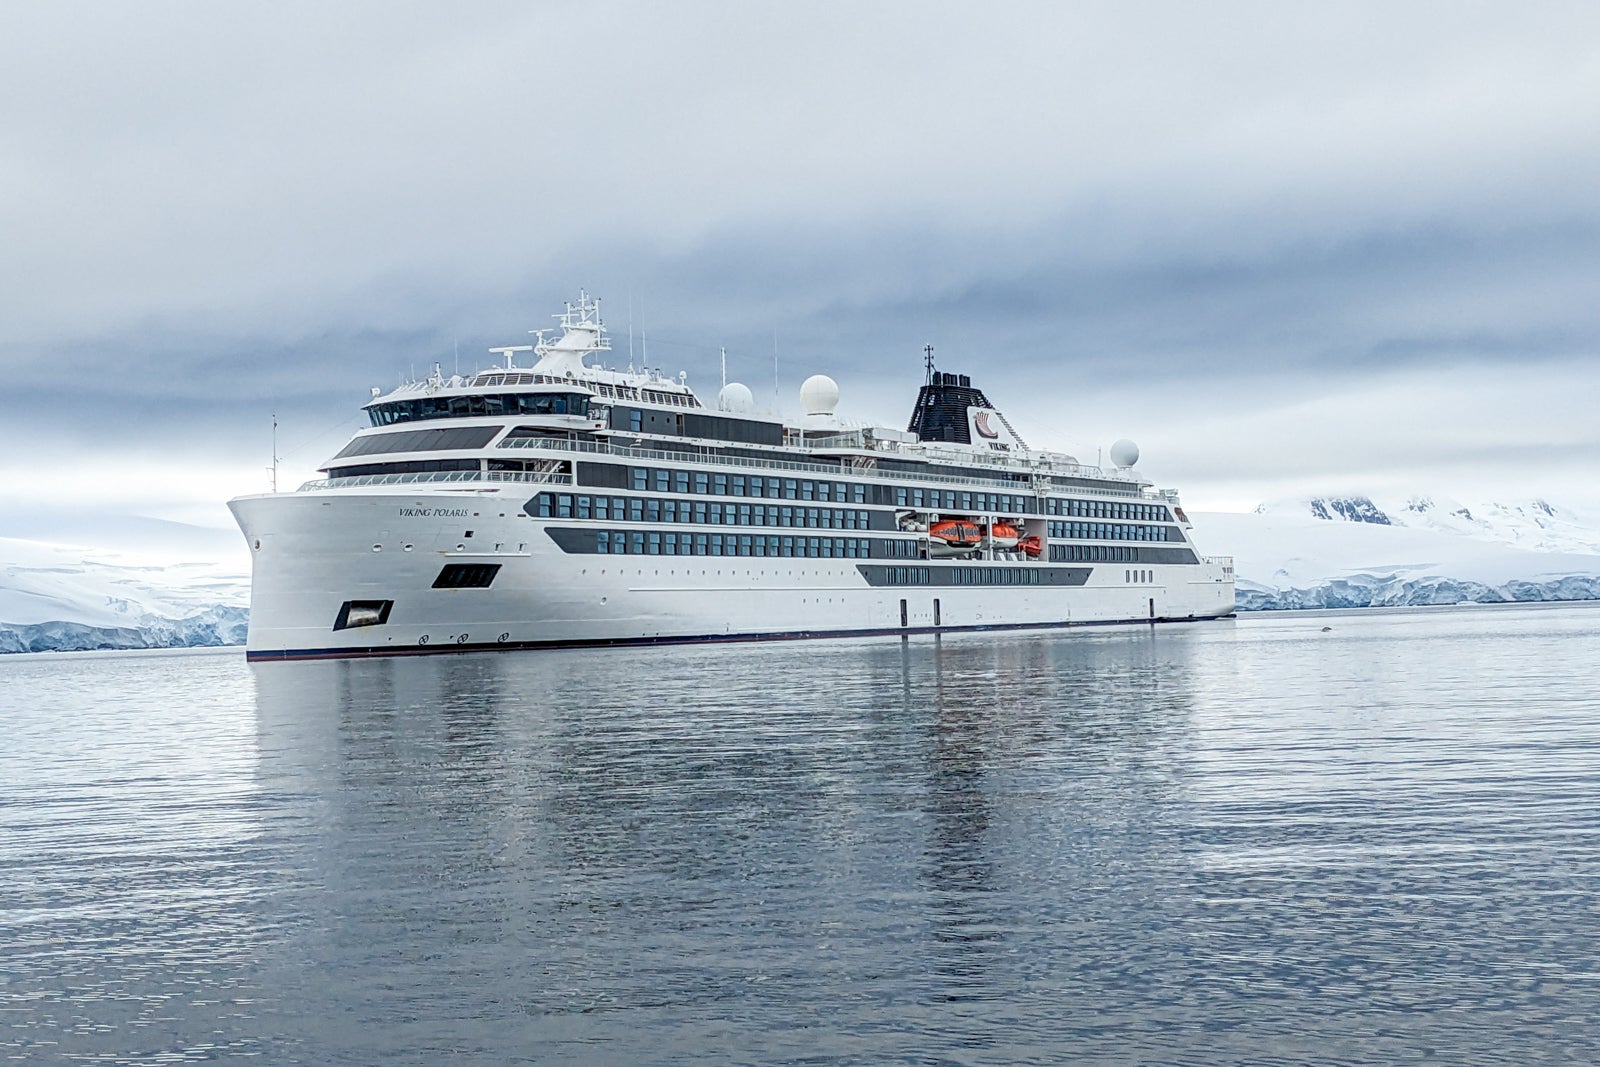 Viking Polaris cruise ship review: A comfortable ship for adventurous cruising